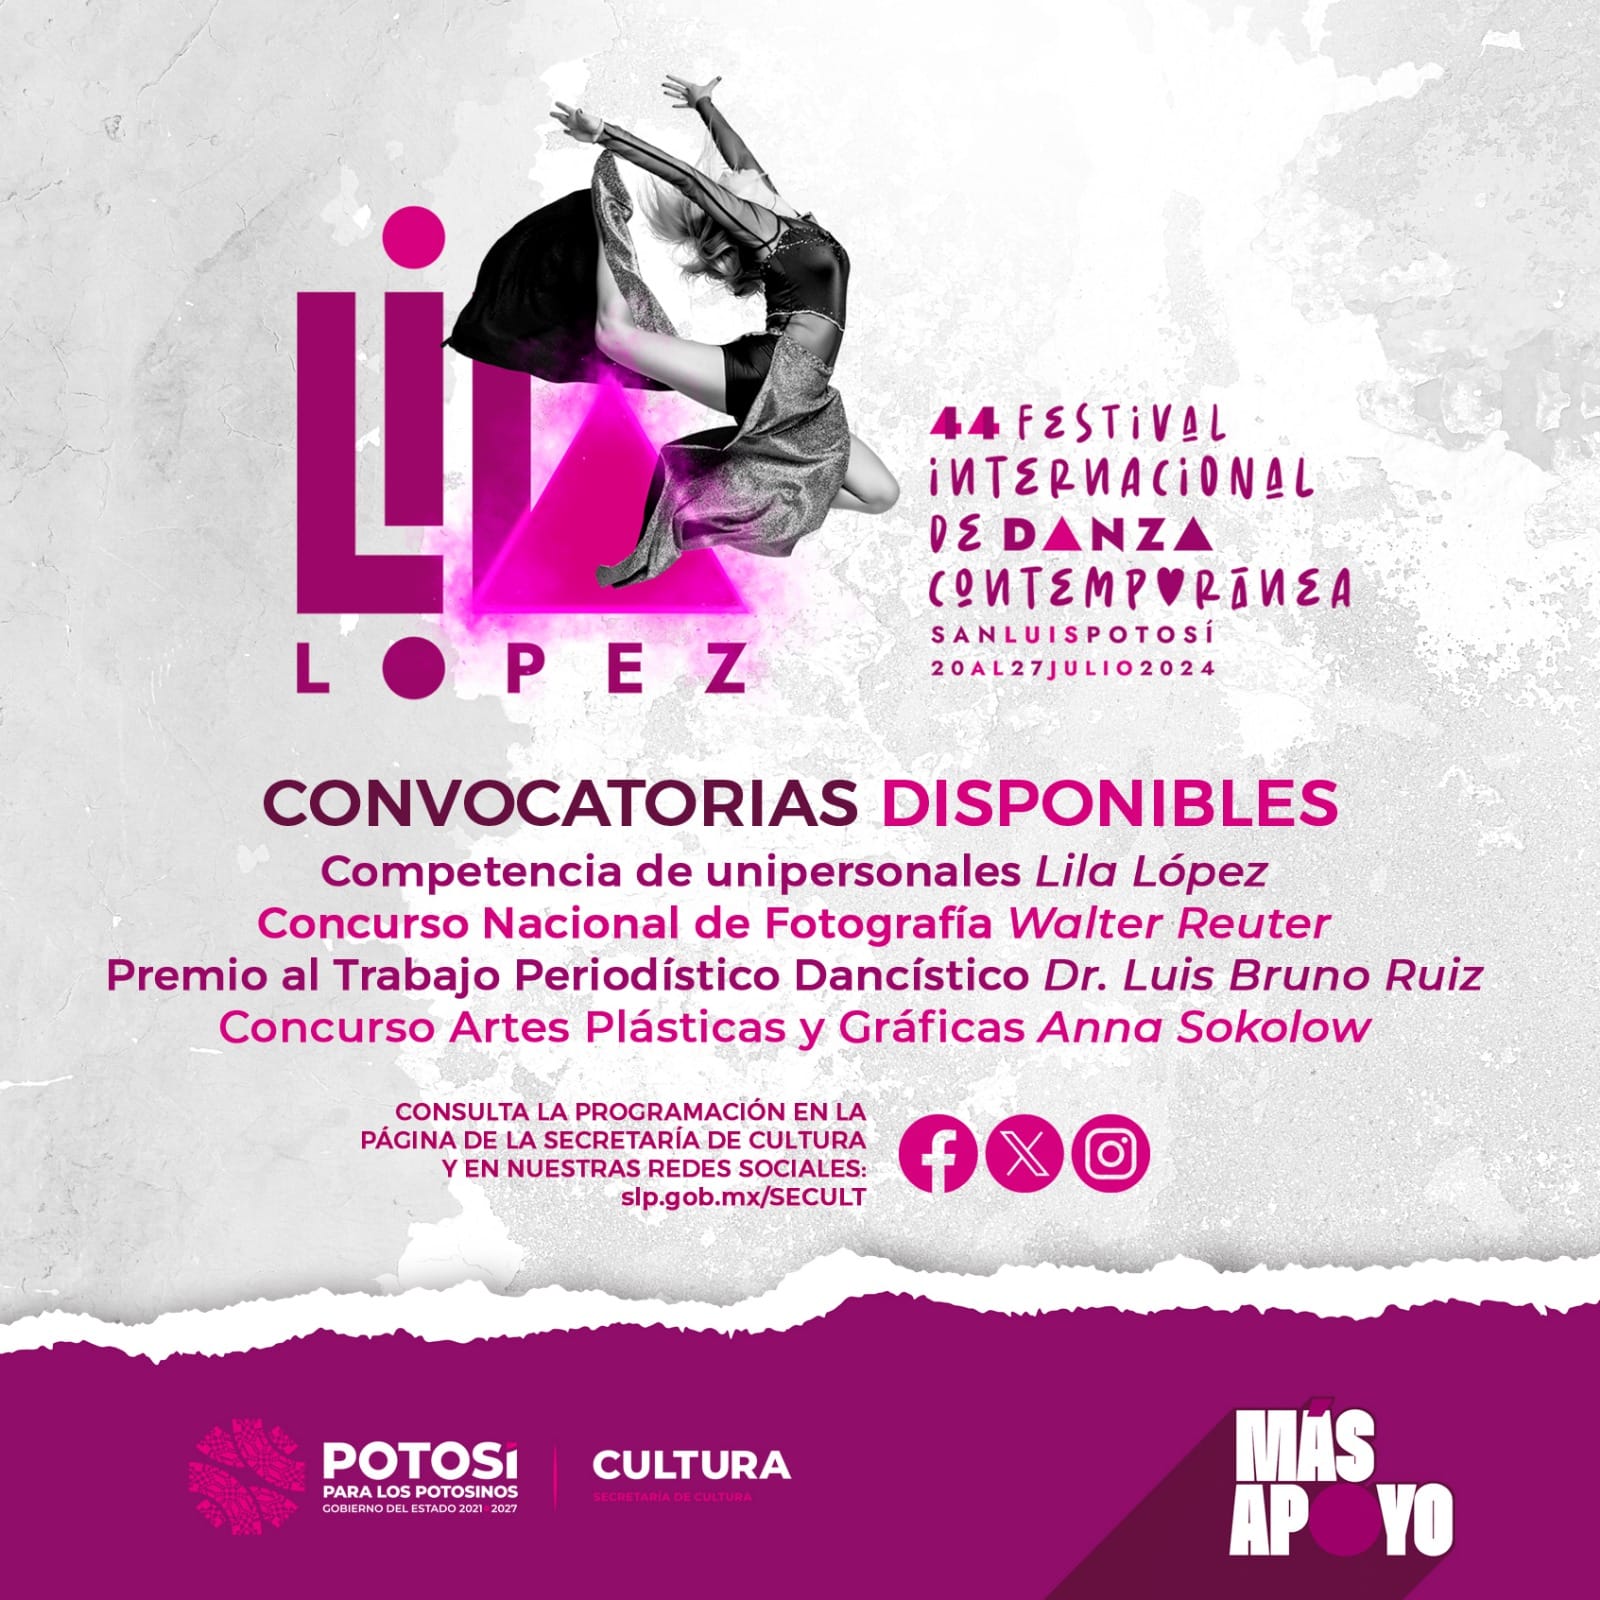 Conoce las convocatorias de la 44° edición del Festival Internacional de Danza Contemporánea “Lila López”